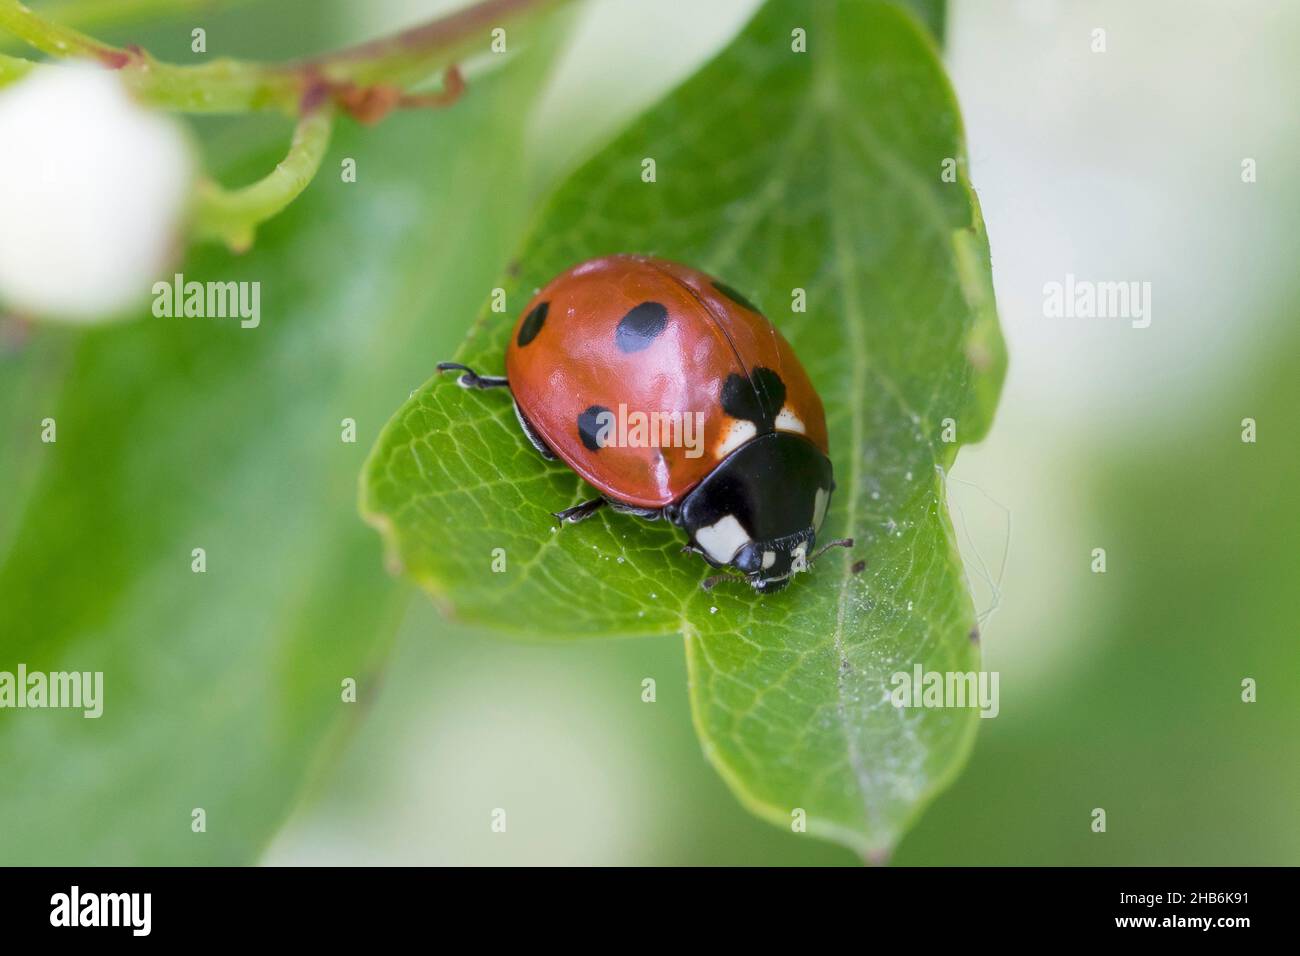 Coccinella sepptenunctata, ladybird à sept points, coccinella sepptenunctata à 7 points, se trouve sur une feuille, en Allemagne Banque D'Images